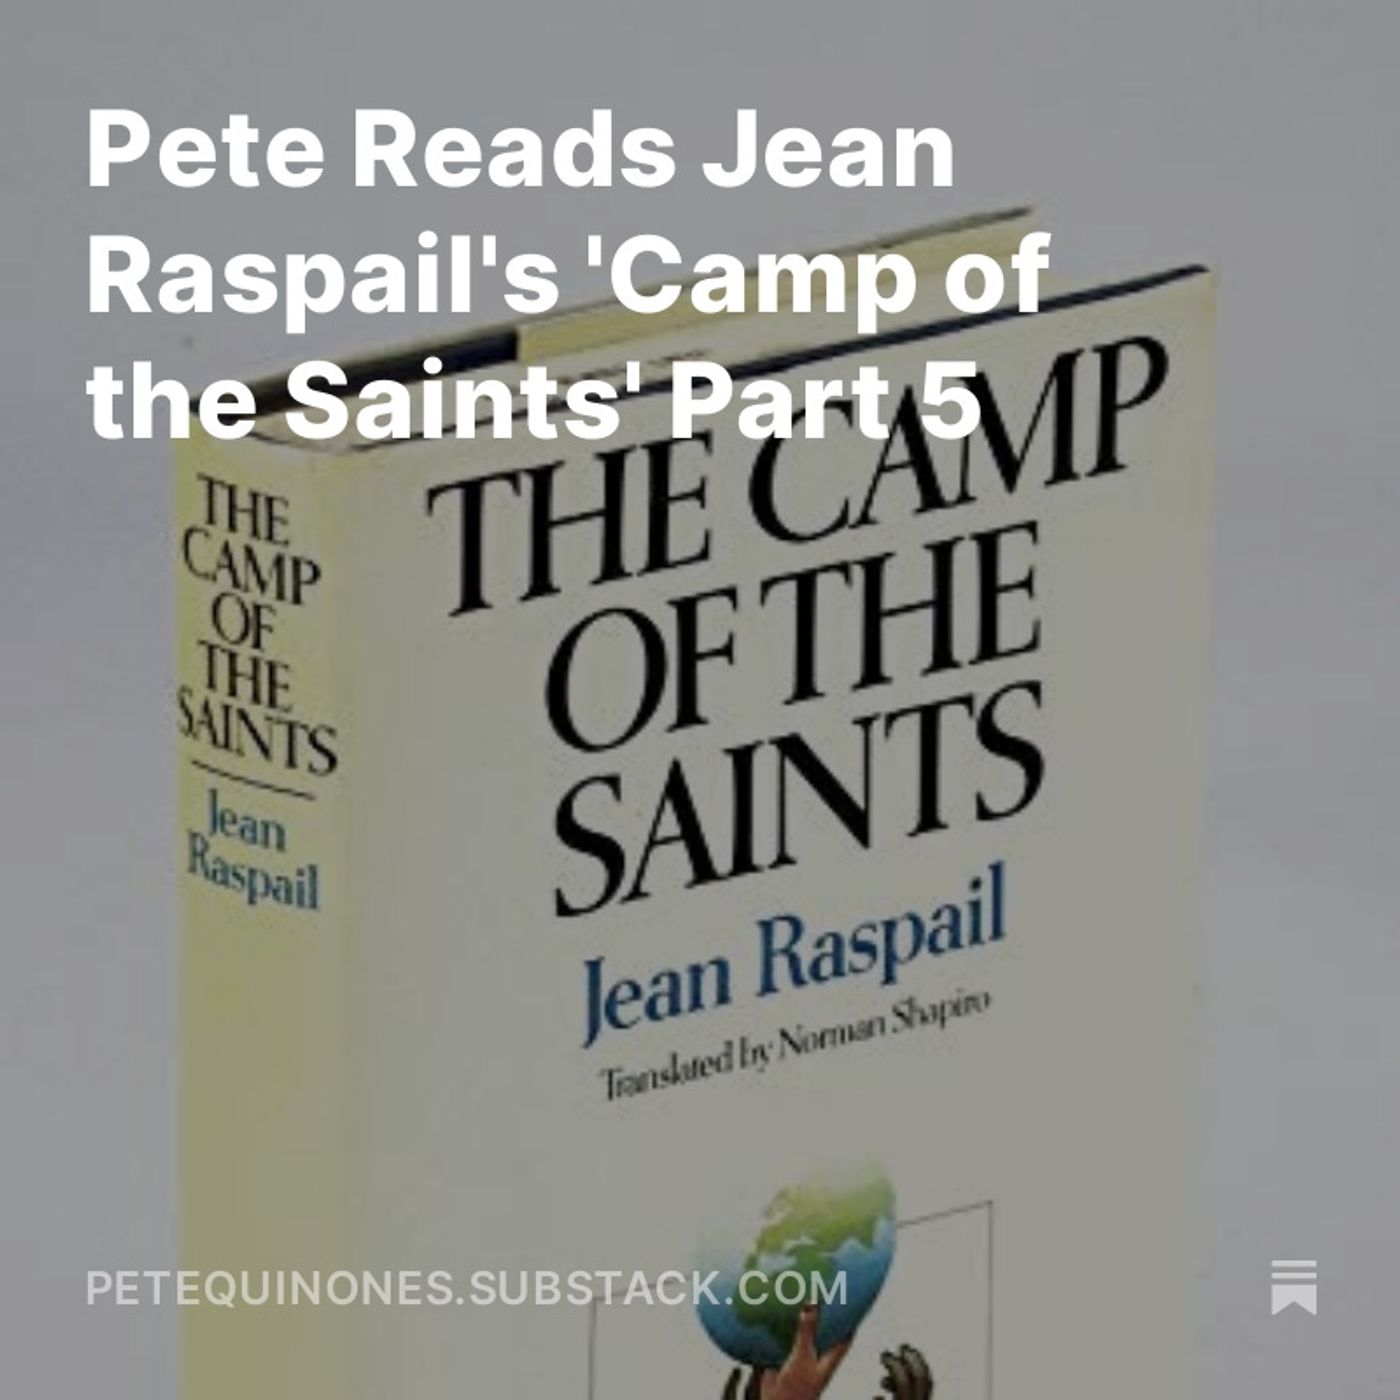 Pete Reads Jean Raspail’s ’Camp of the Saints’ Part 5